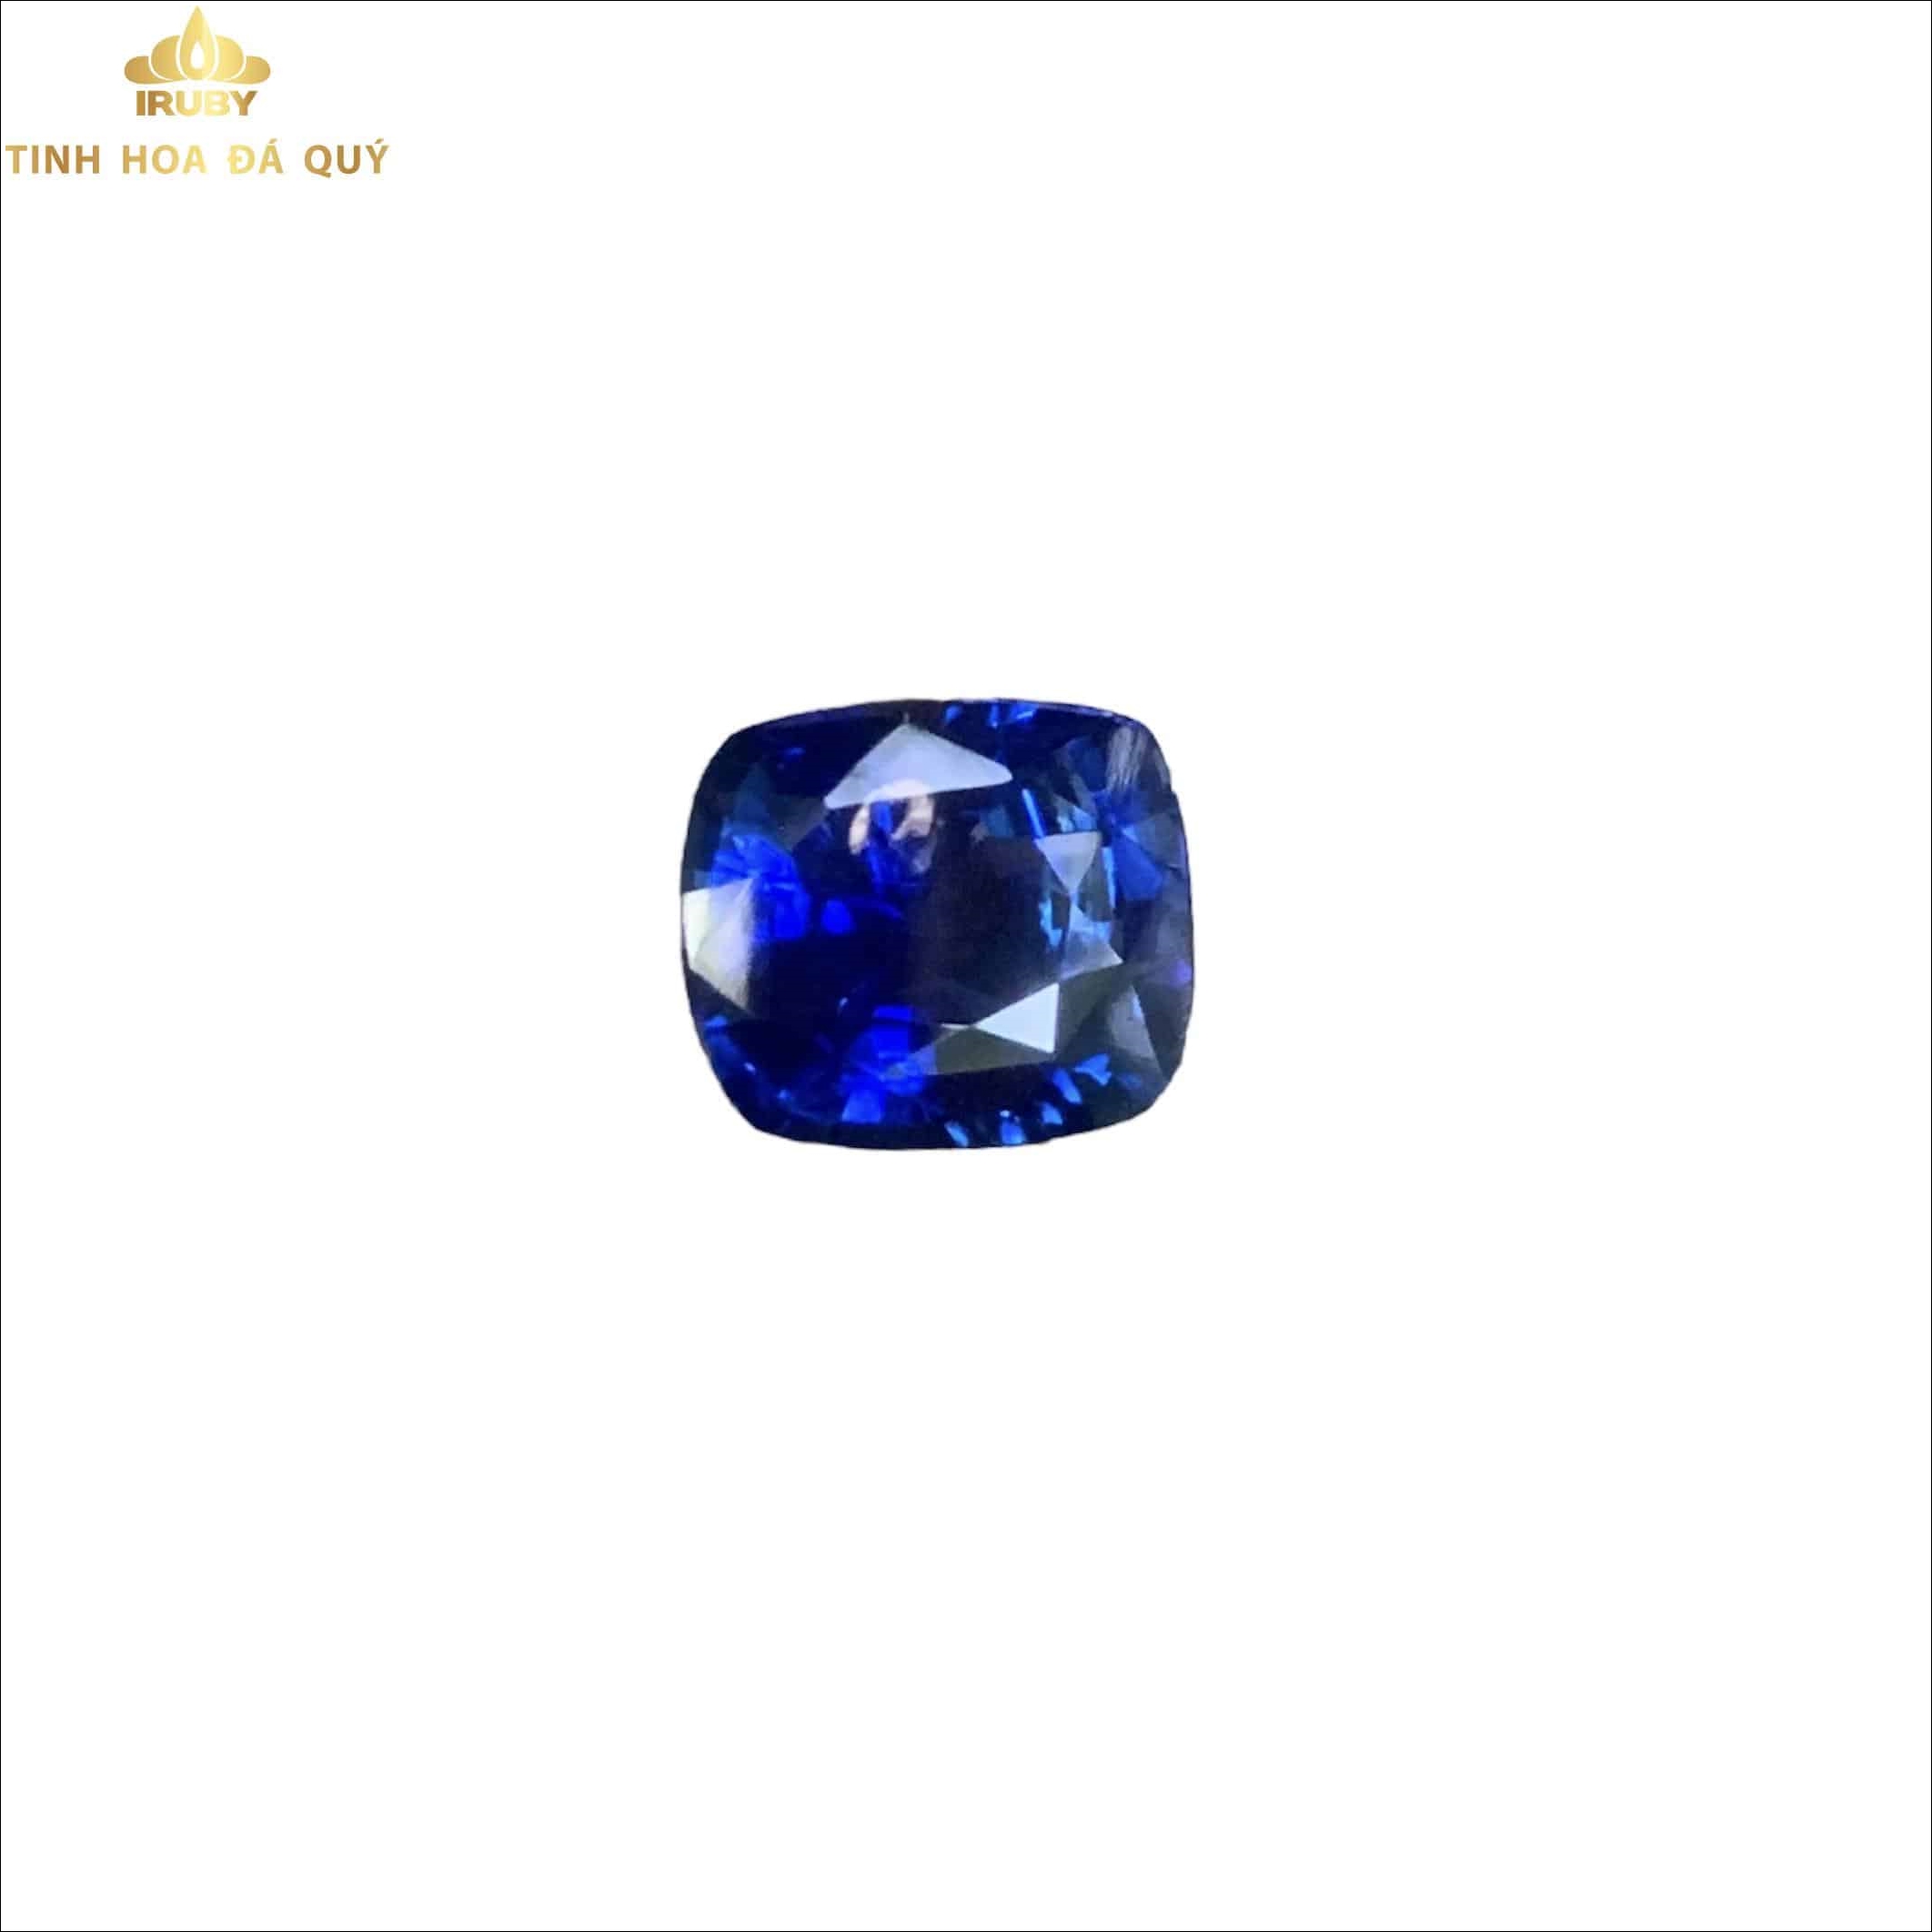 Viên Sapphire xanh lam Hoàng Gia 3,6ct - IRBS 221136